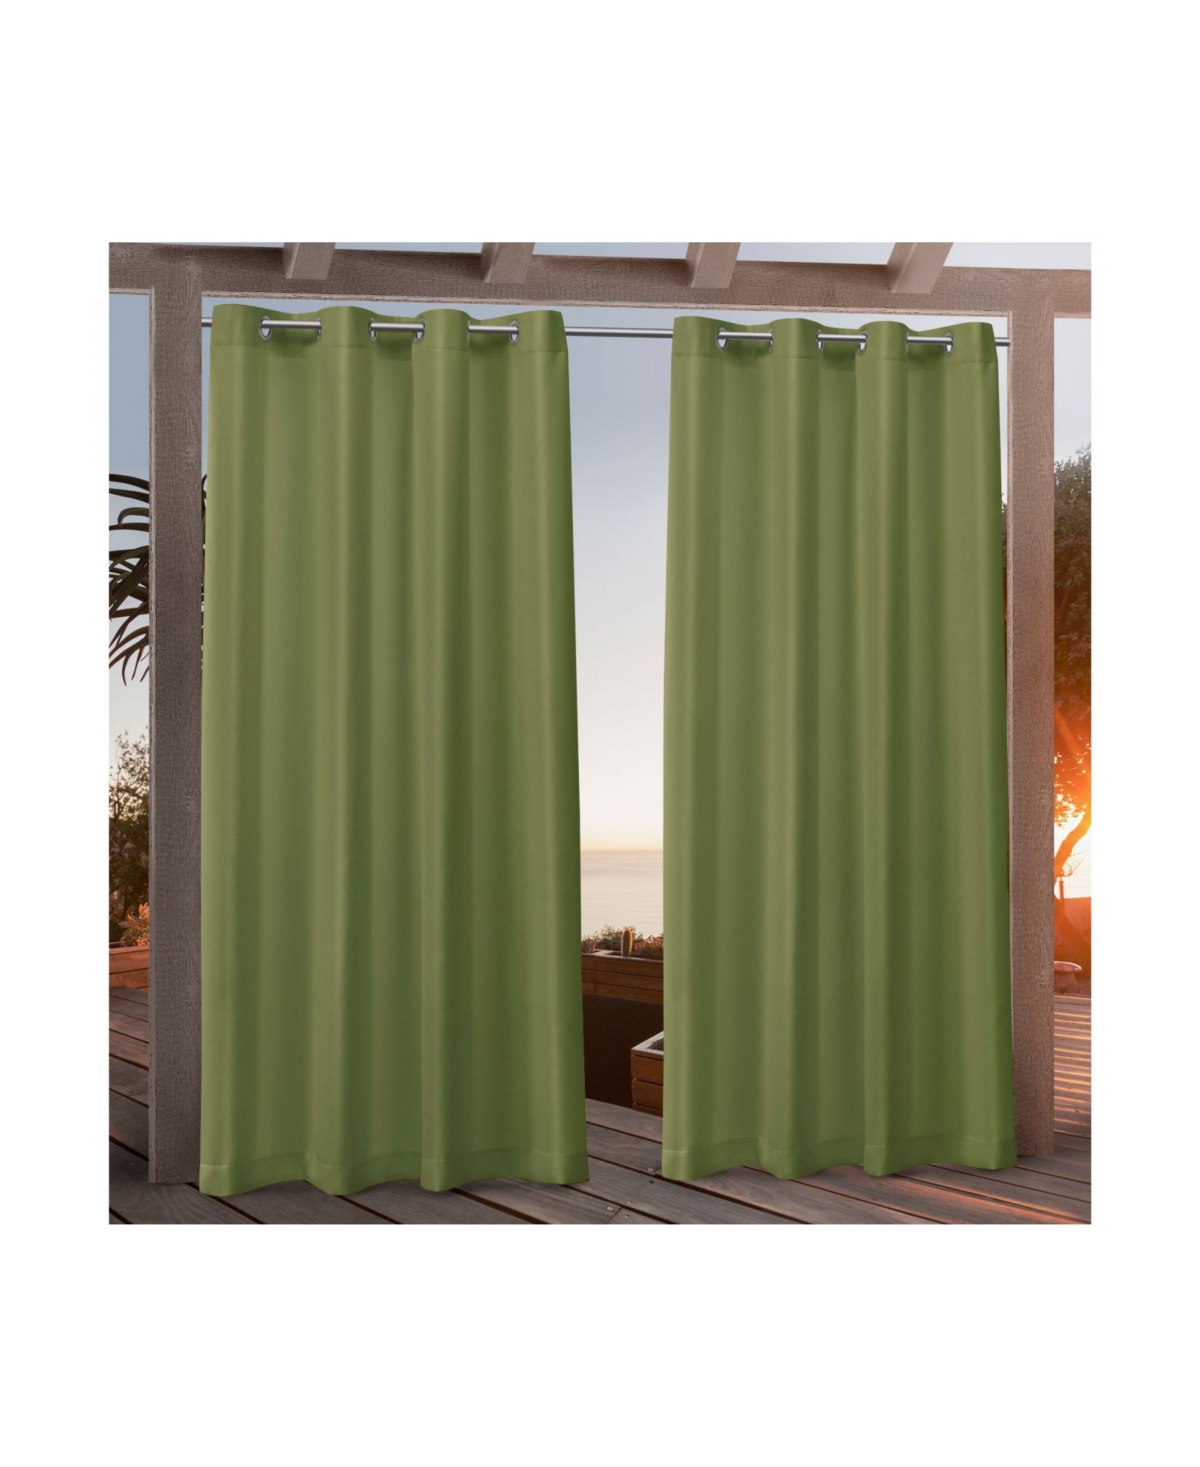 Canvas Indoor/Outdoor Grommet Top 54" X 96" Curtain Panel Pair - Green